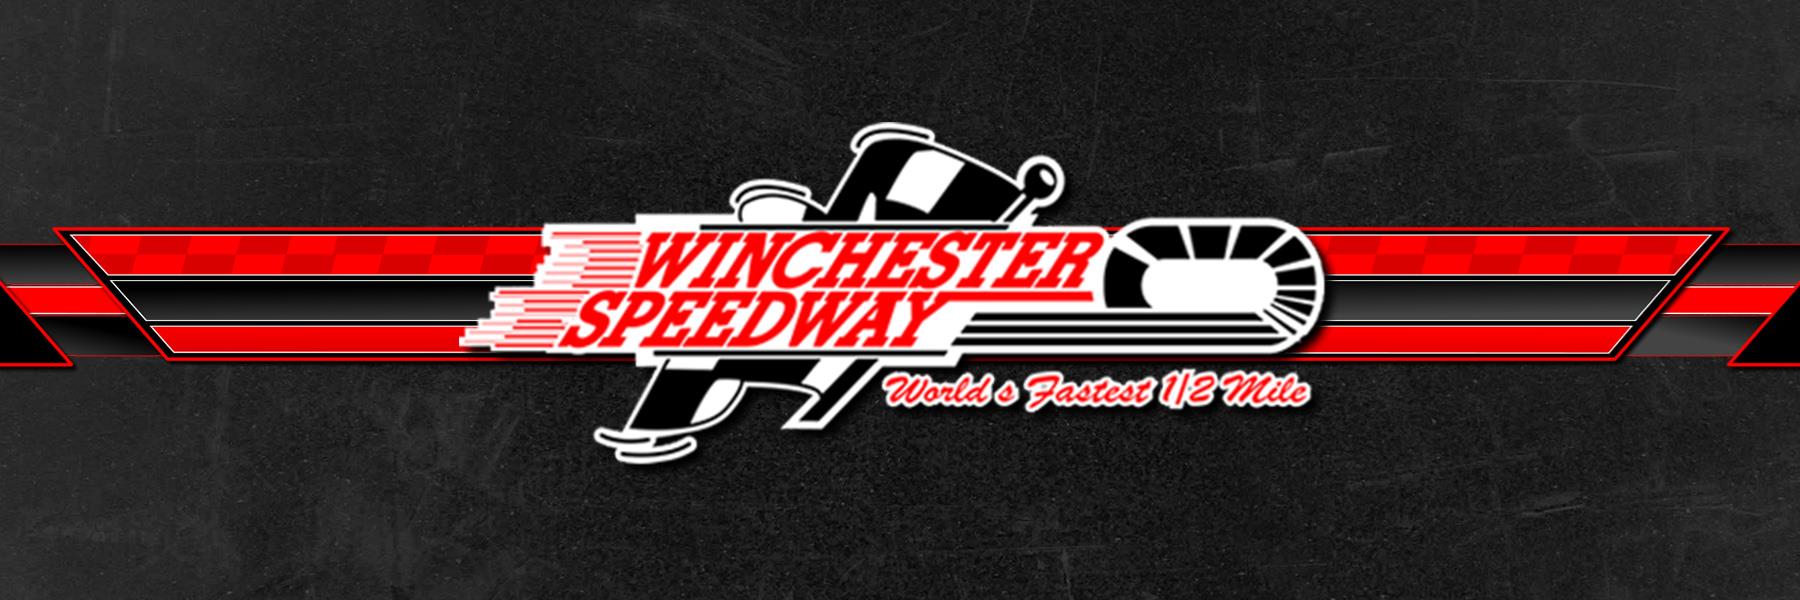 8/8/1996 - Winchester Speedway